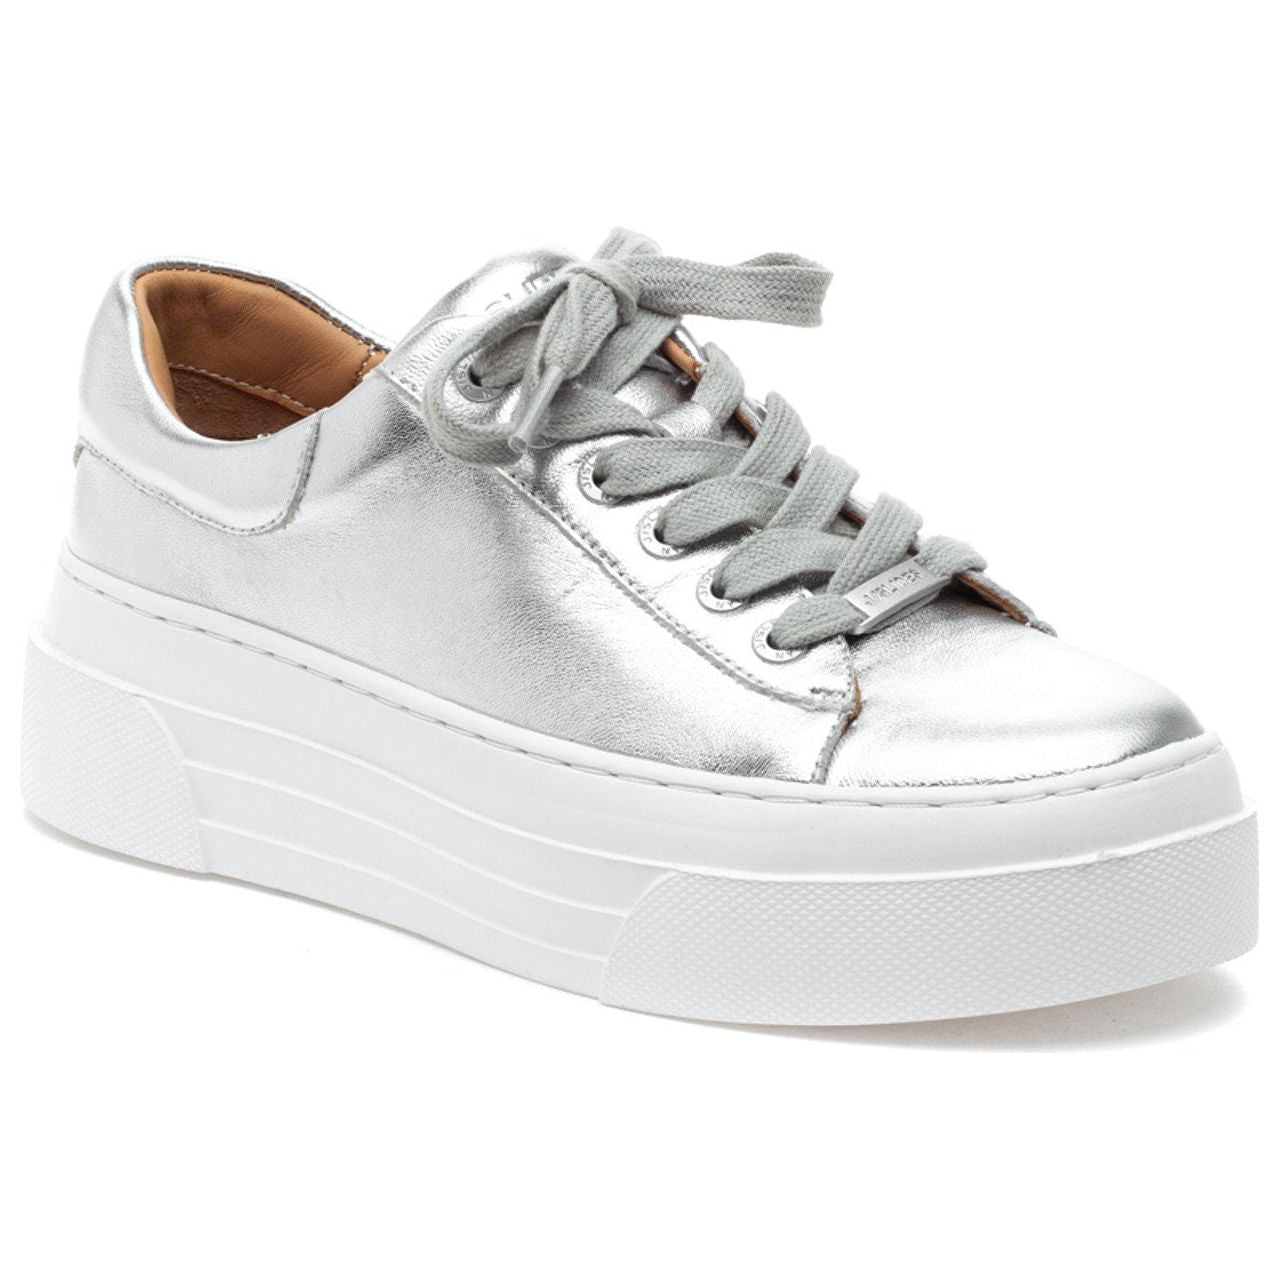 J Slides - Amanda Sneaker in Silver-SQ4110581